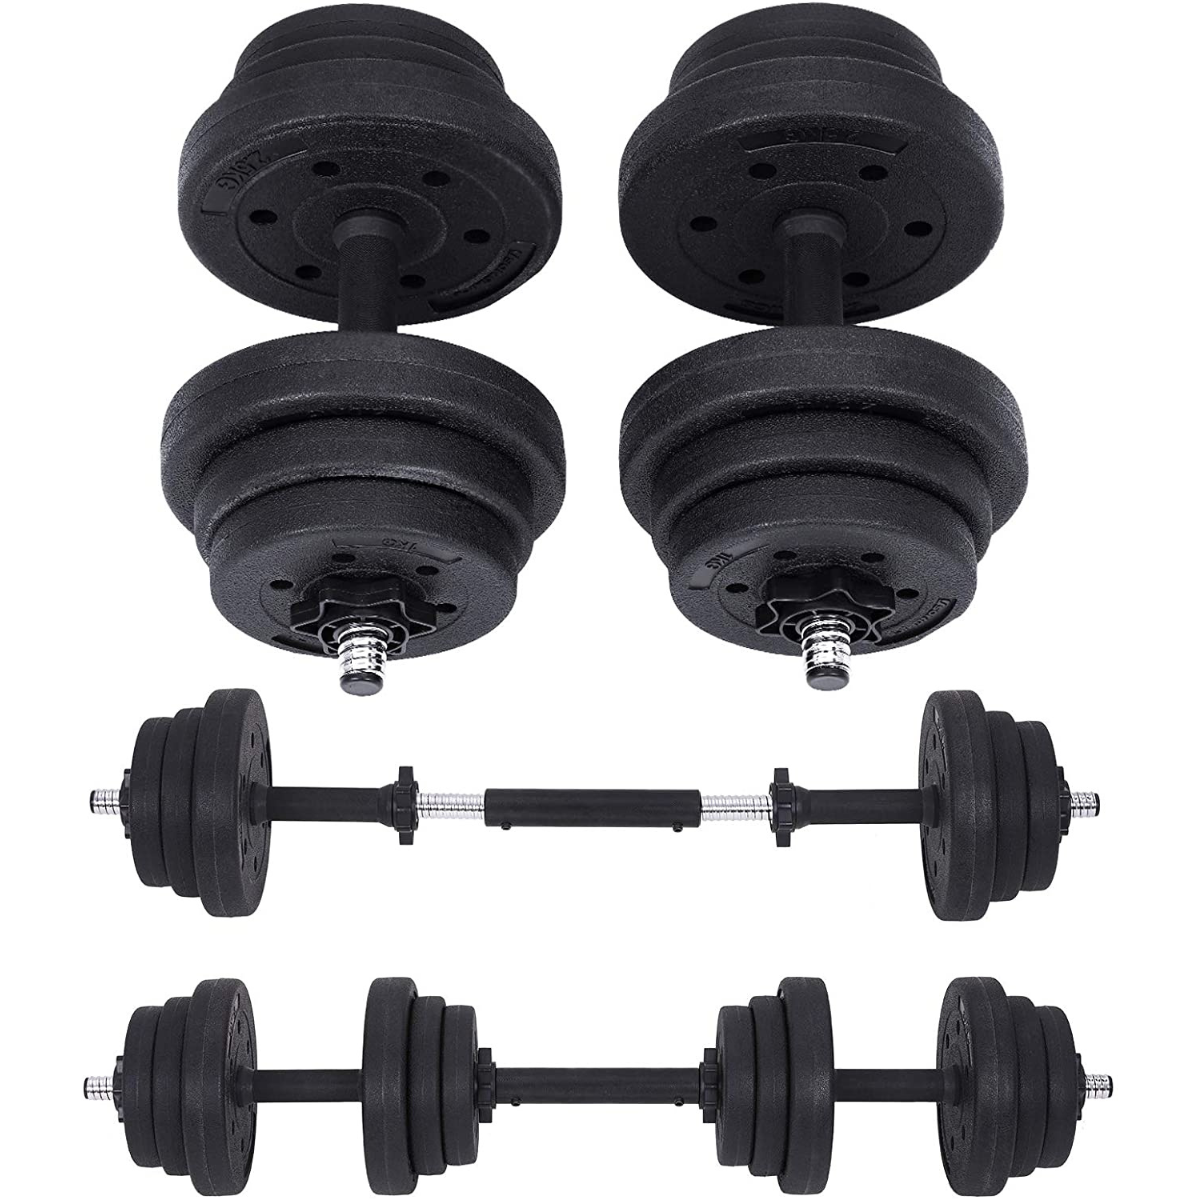 Nancy's Hatchley Dumbbell Set - Weights - Dumbbells - Fitness training - Black - 4 x 2.5 kg - 4 x 1.25 kg - 4 x 1 kg